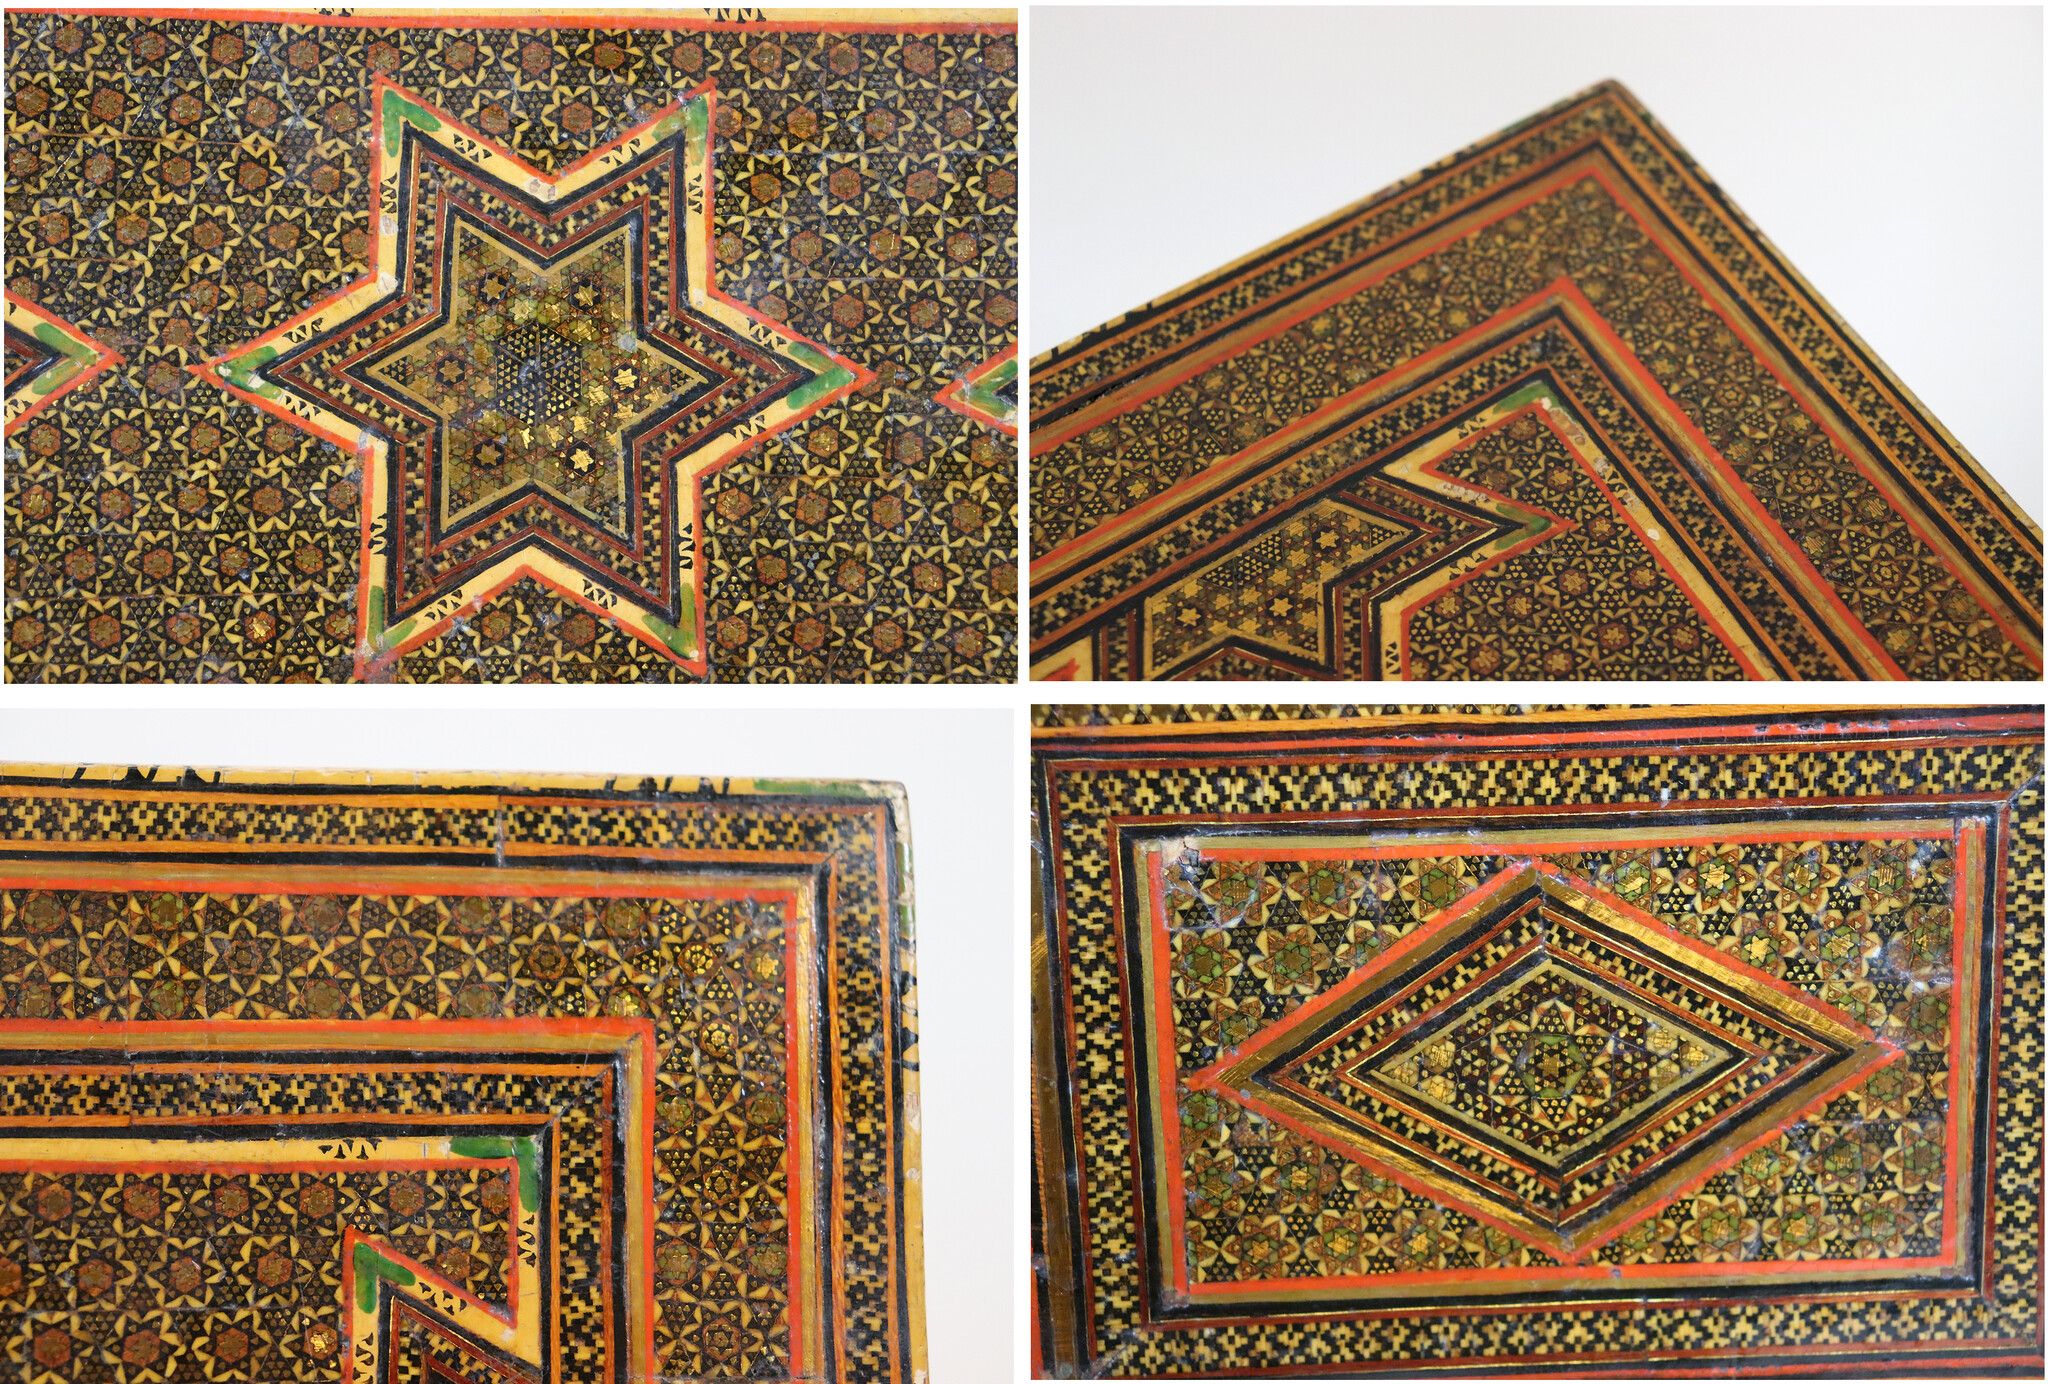 Antik islamische Khatamkari Kiste Truhe Box 18./19. Jahrhundert Nr: C